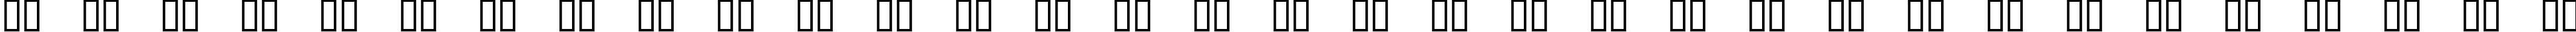 Пример написания русского алфавита шрифтом DinosoType